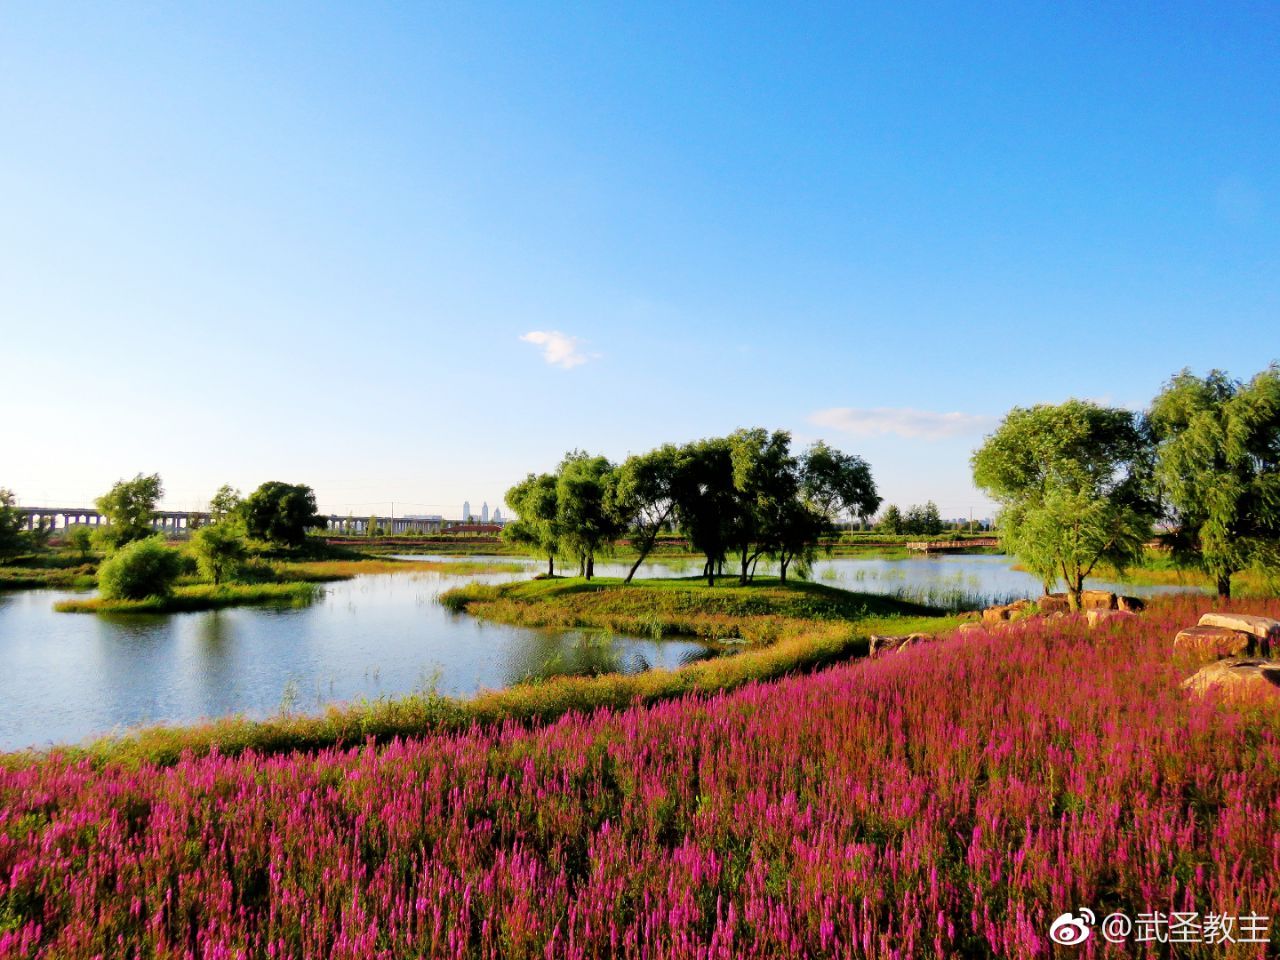 【高清图】洋湖湿地公园风景 43-中关村在线摄影论坛